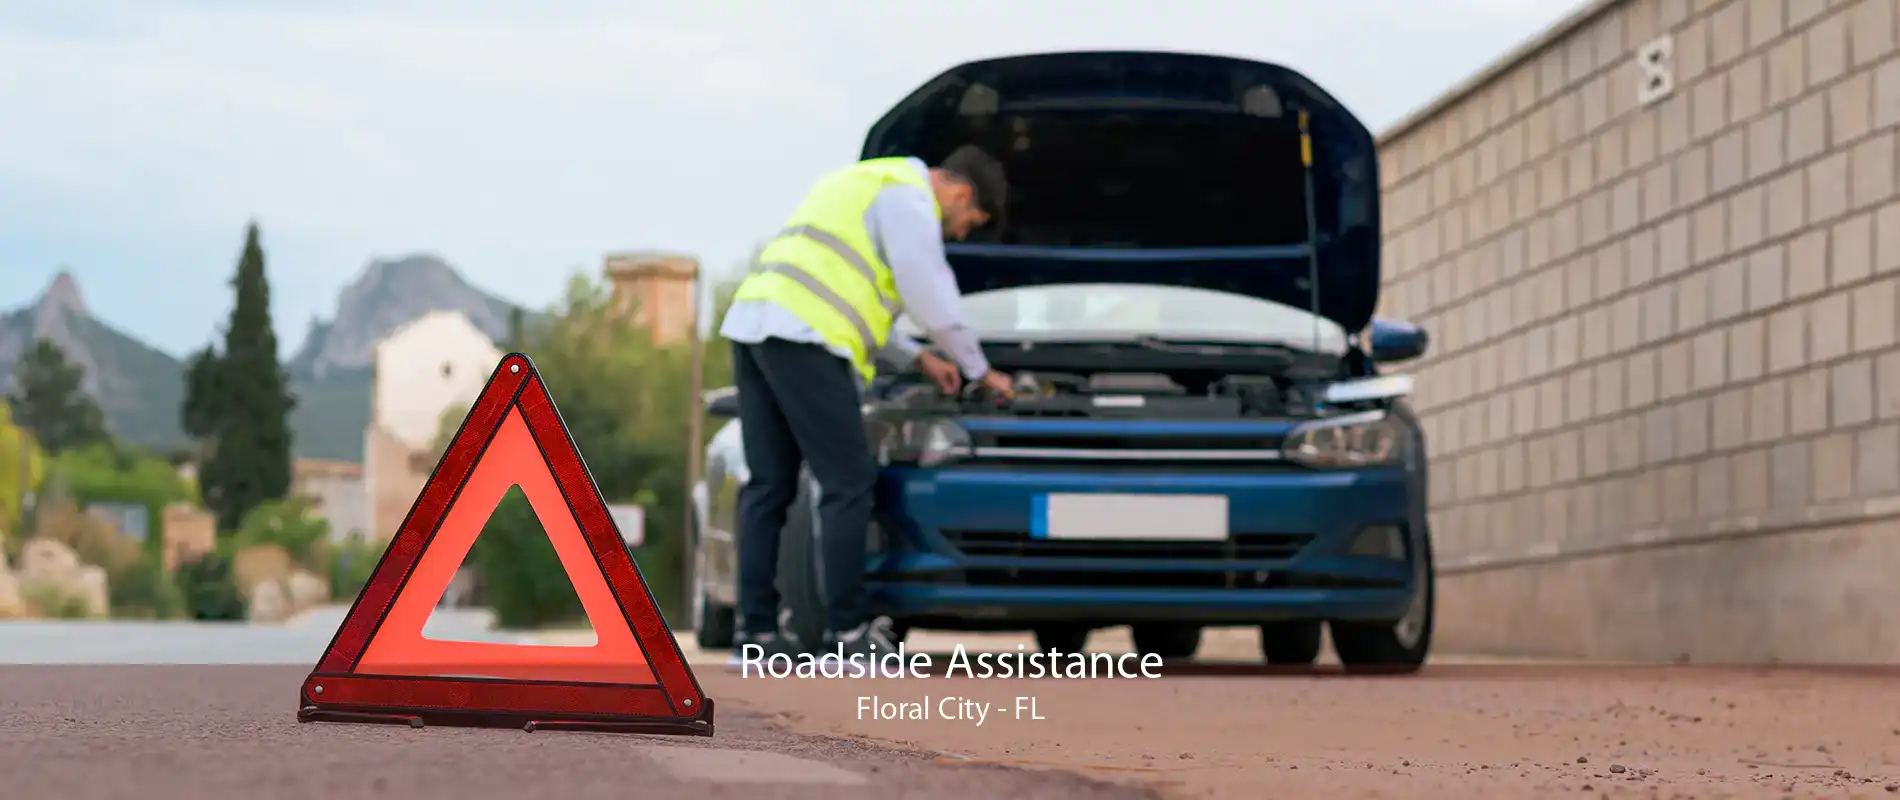 Roadside Assistance Floral City - FL